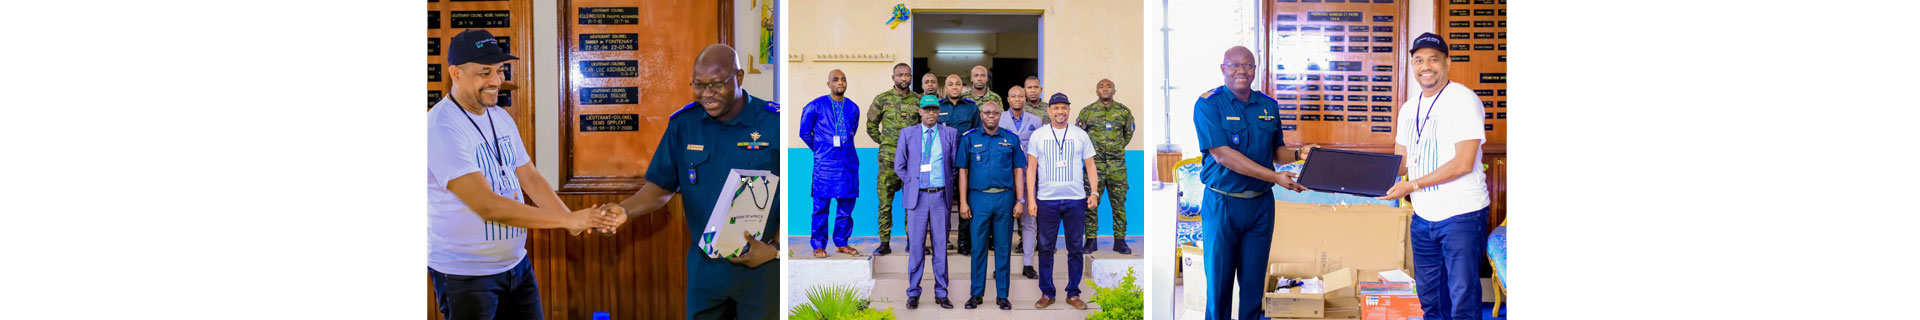 BOA-CÔTE D’IVOIRE with officials